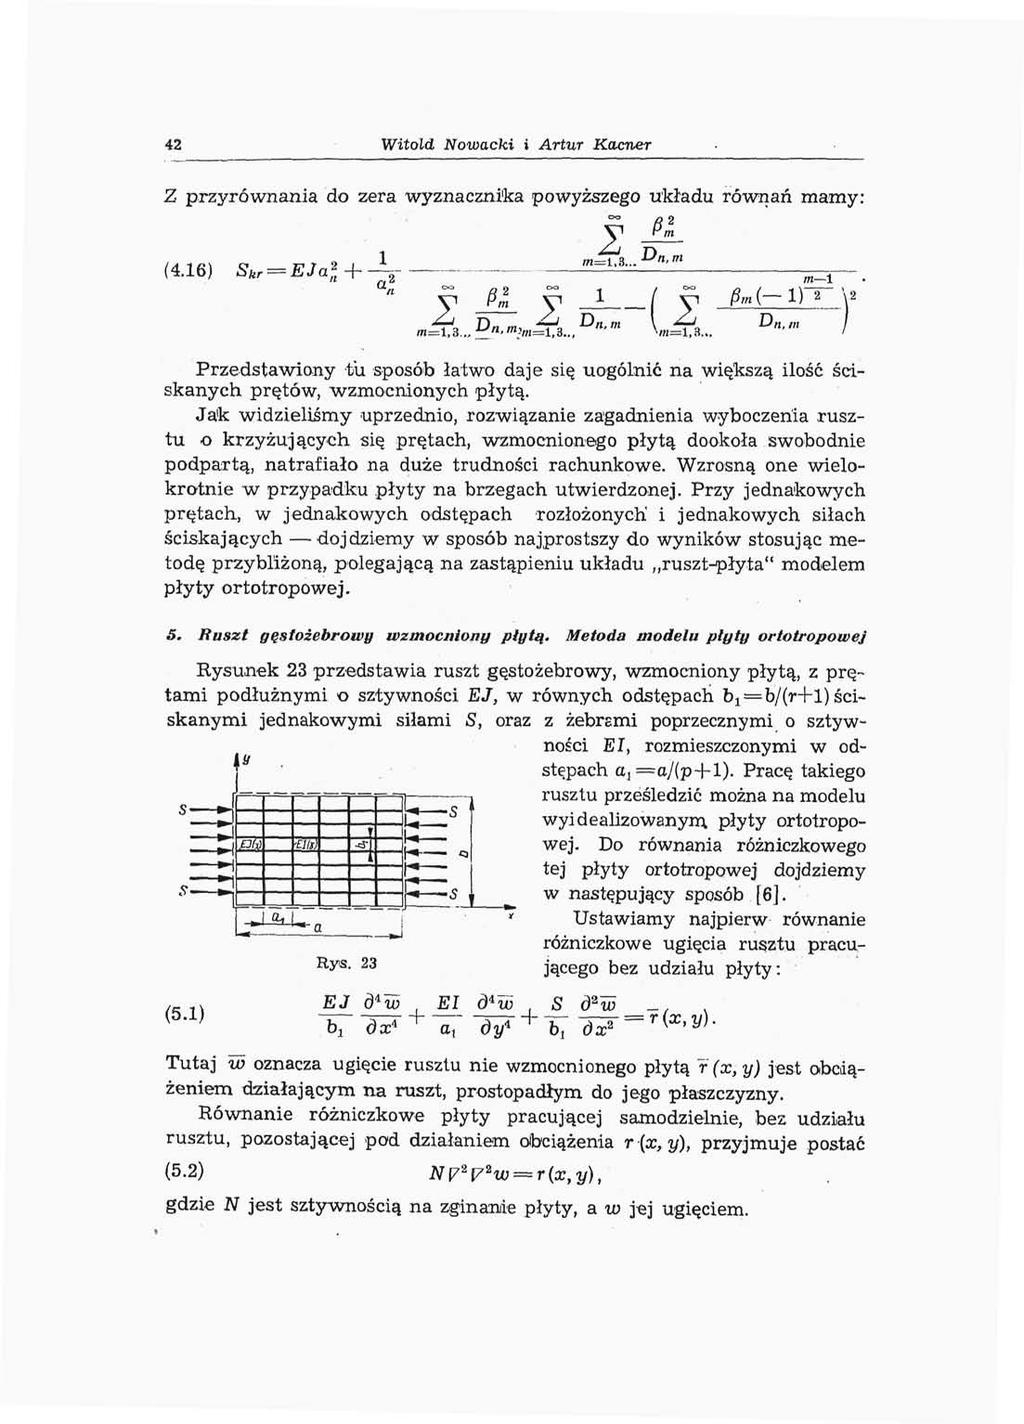 42 Witold Nowacki i Artur Kacner Z przyrównania do zera wyznacznika powyższego układu równań mamy: I (4.6) S fc, =,="- a ' * «-!.«... D «." m m=i,3.